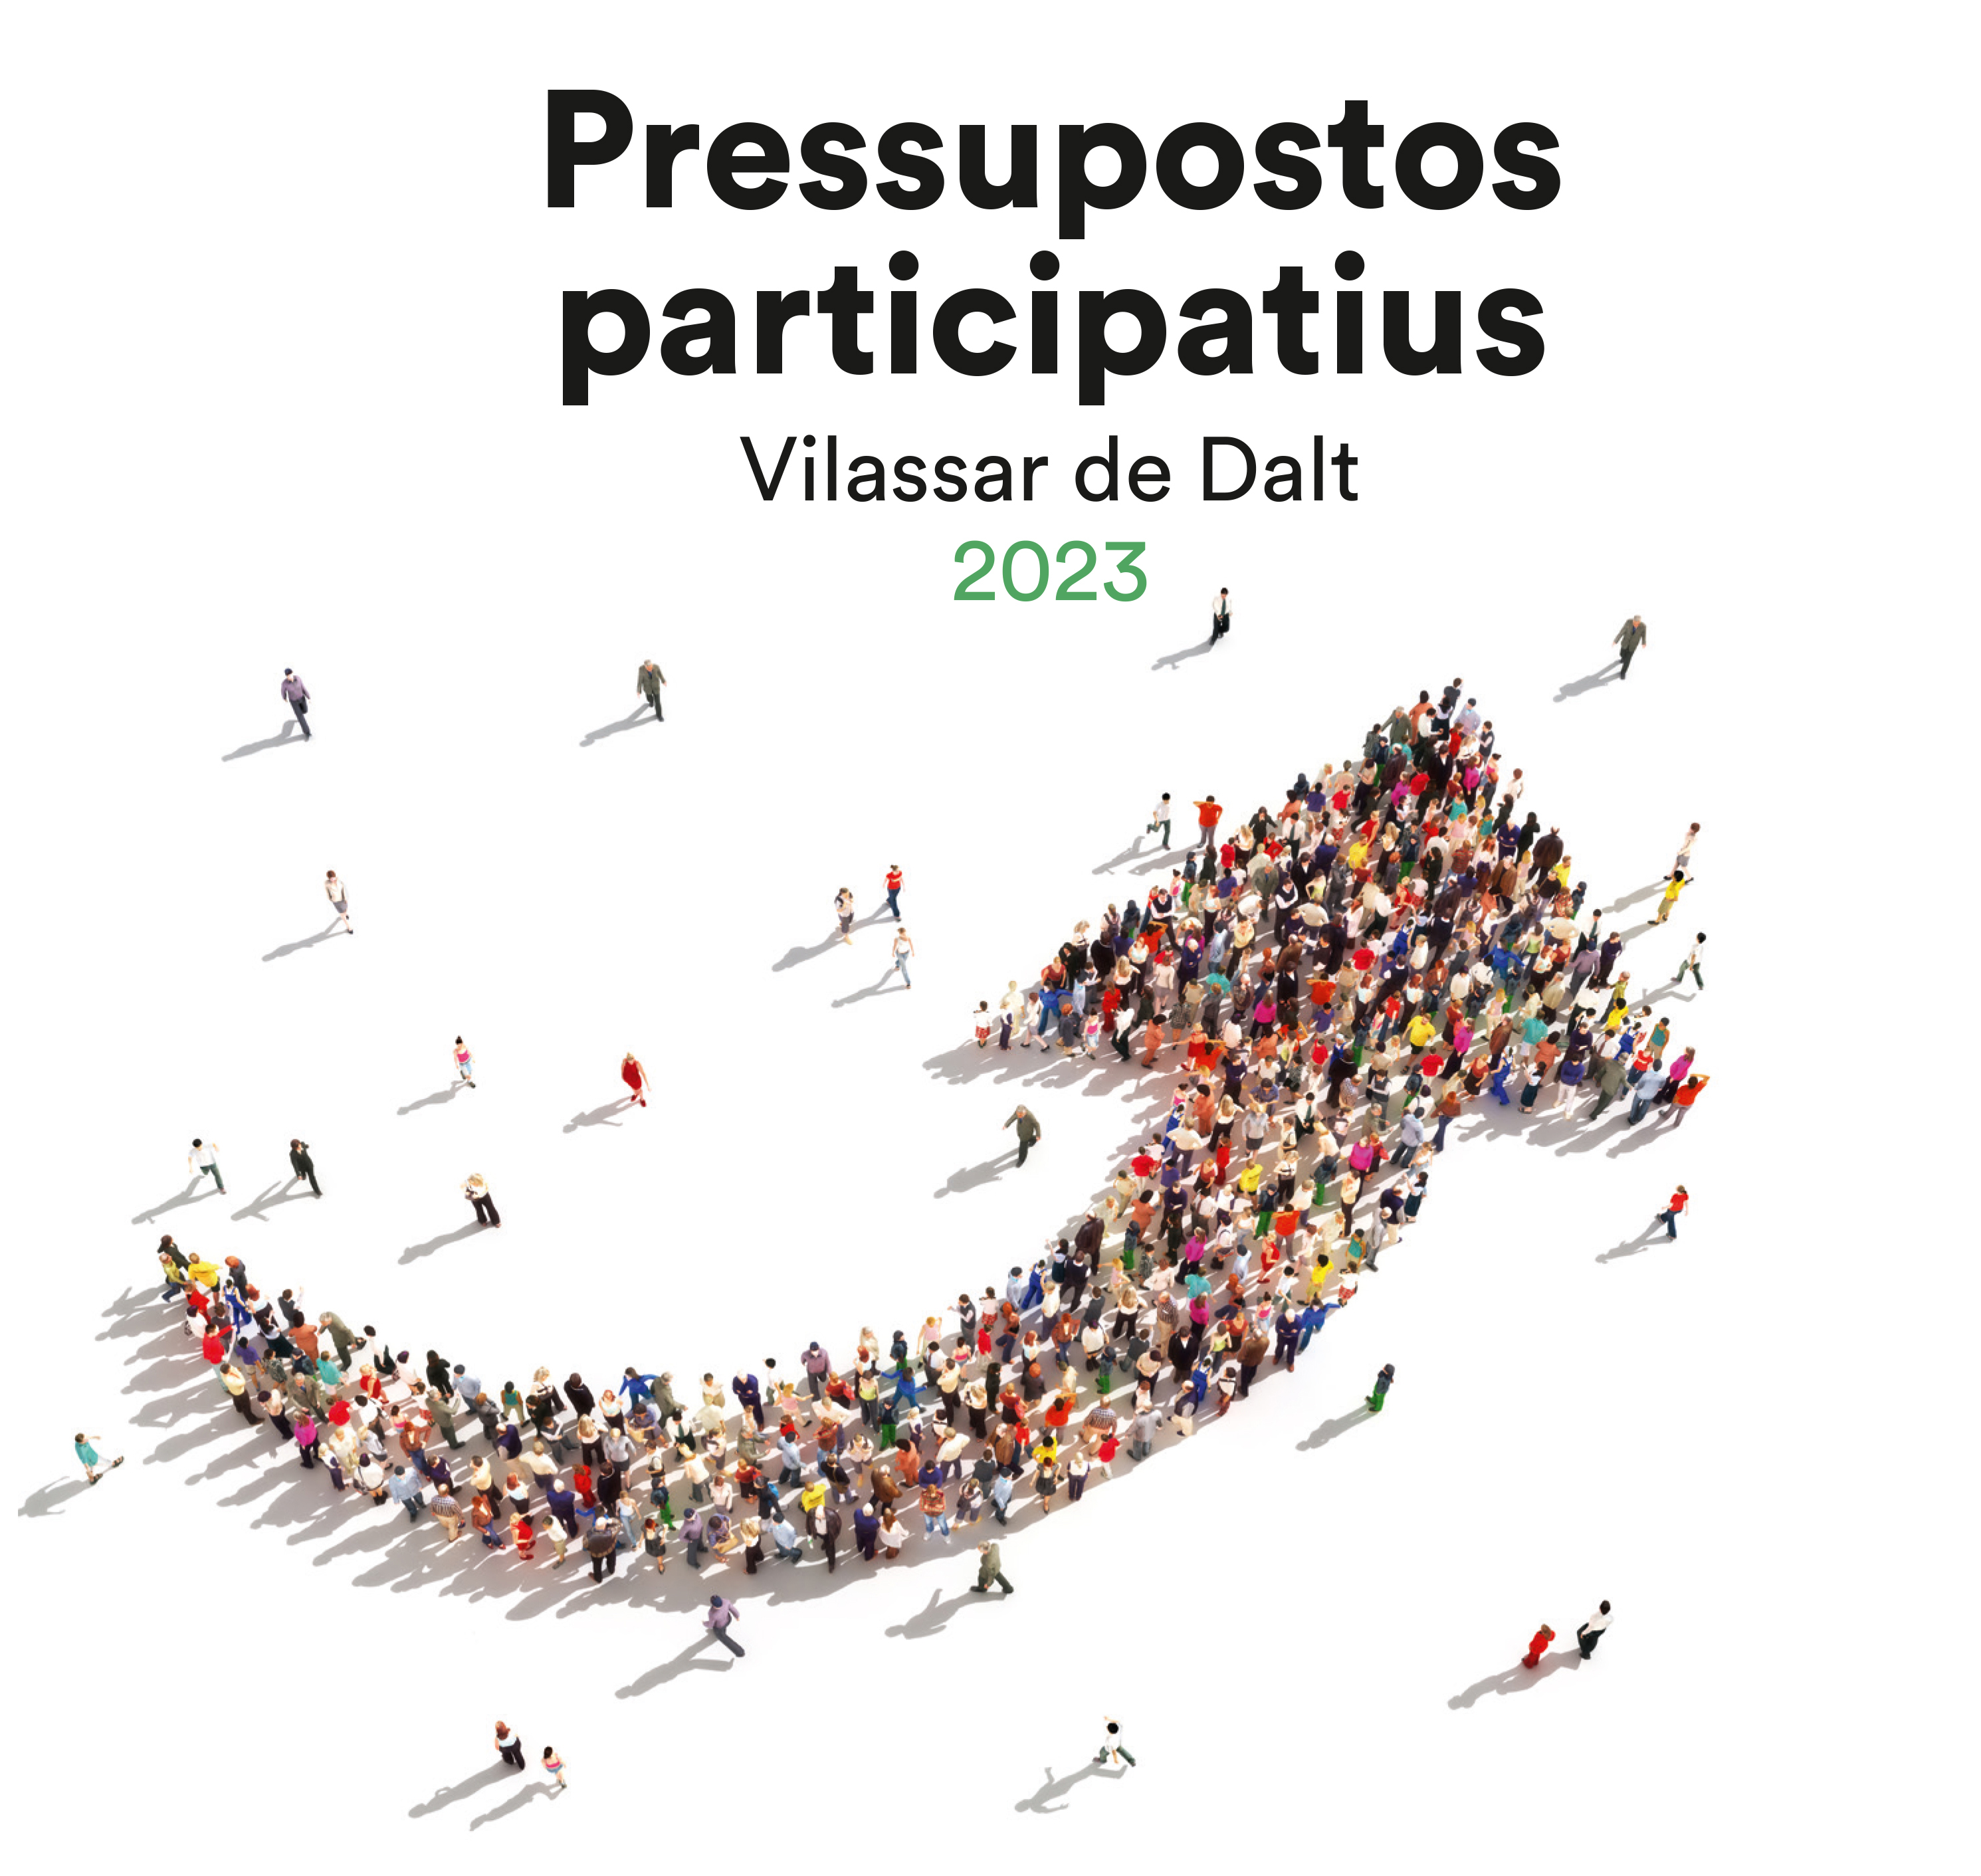 Sis propostes guanyadores dels Pressupostos Participatius 2023